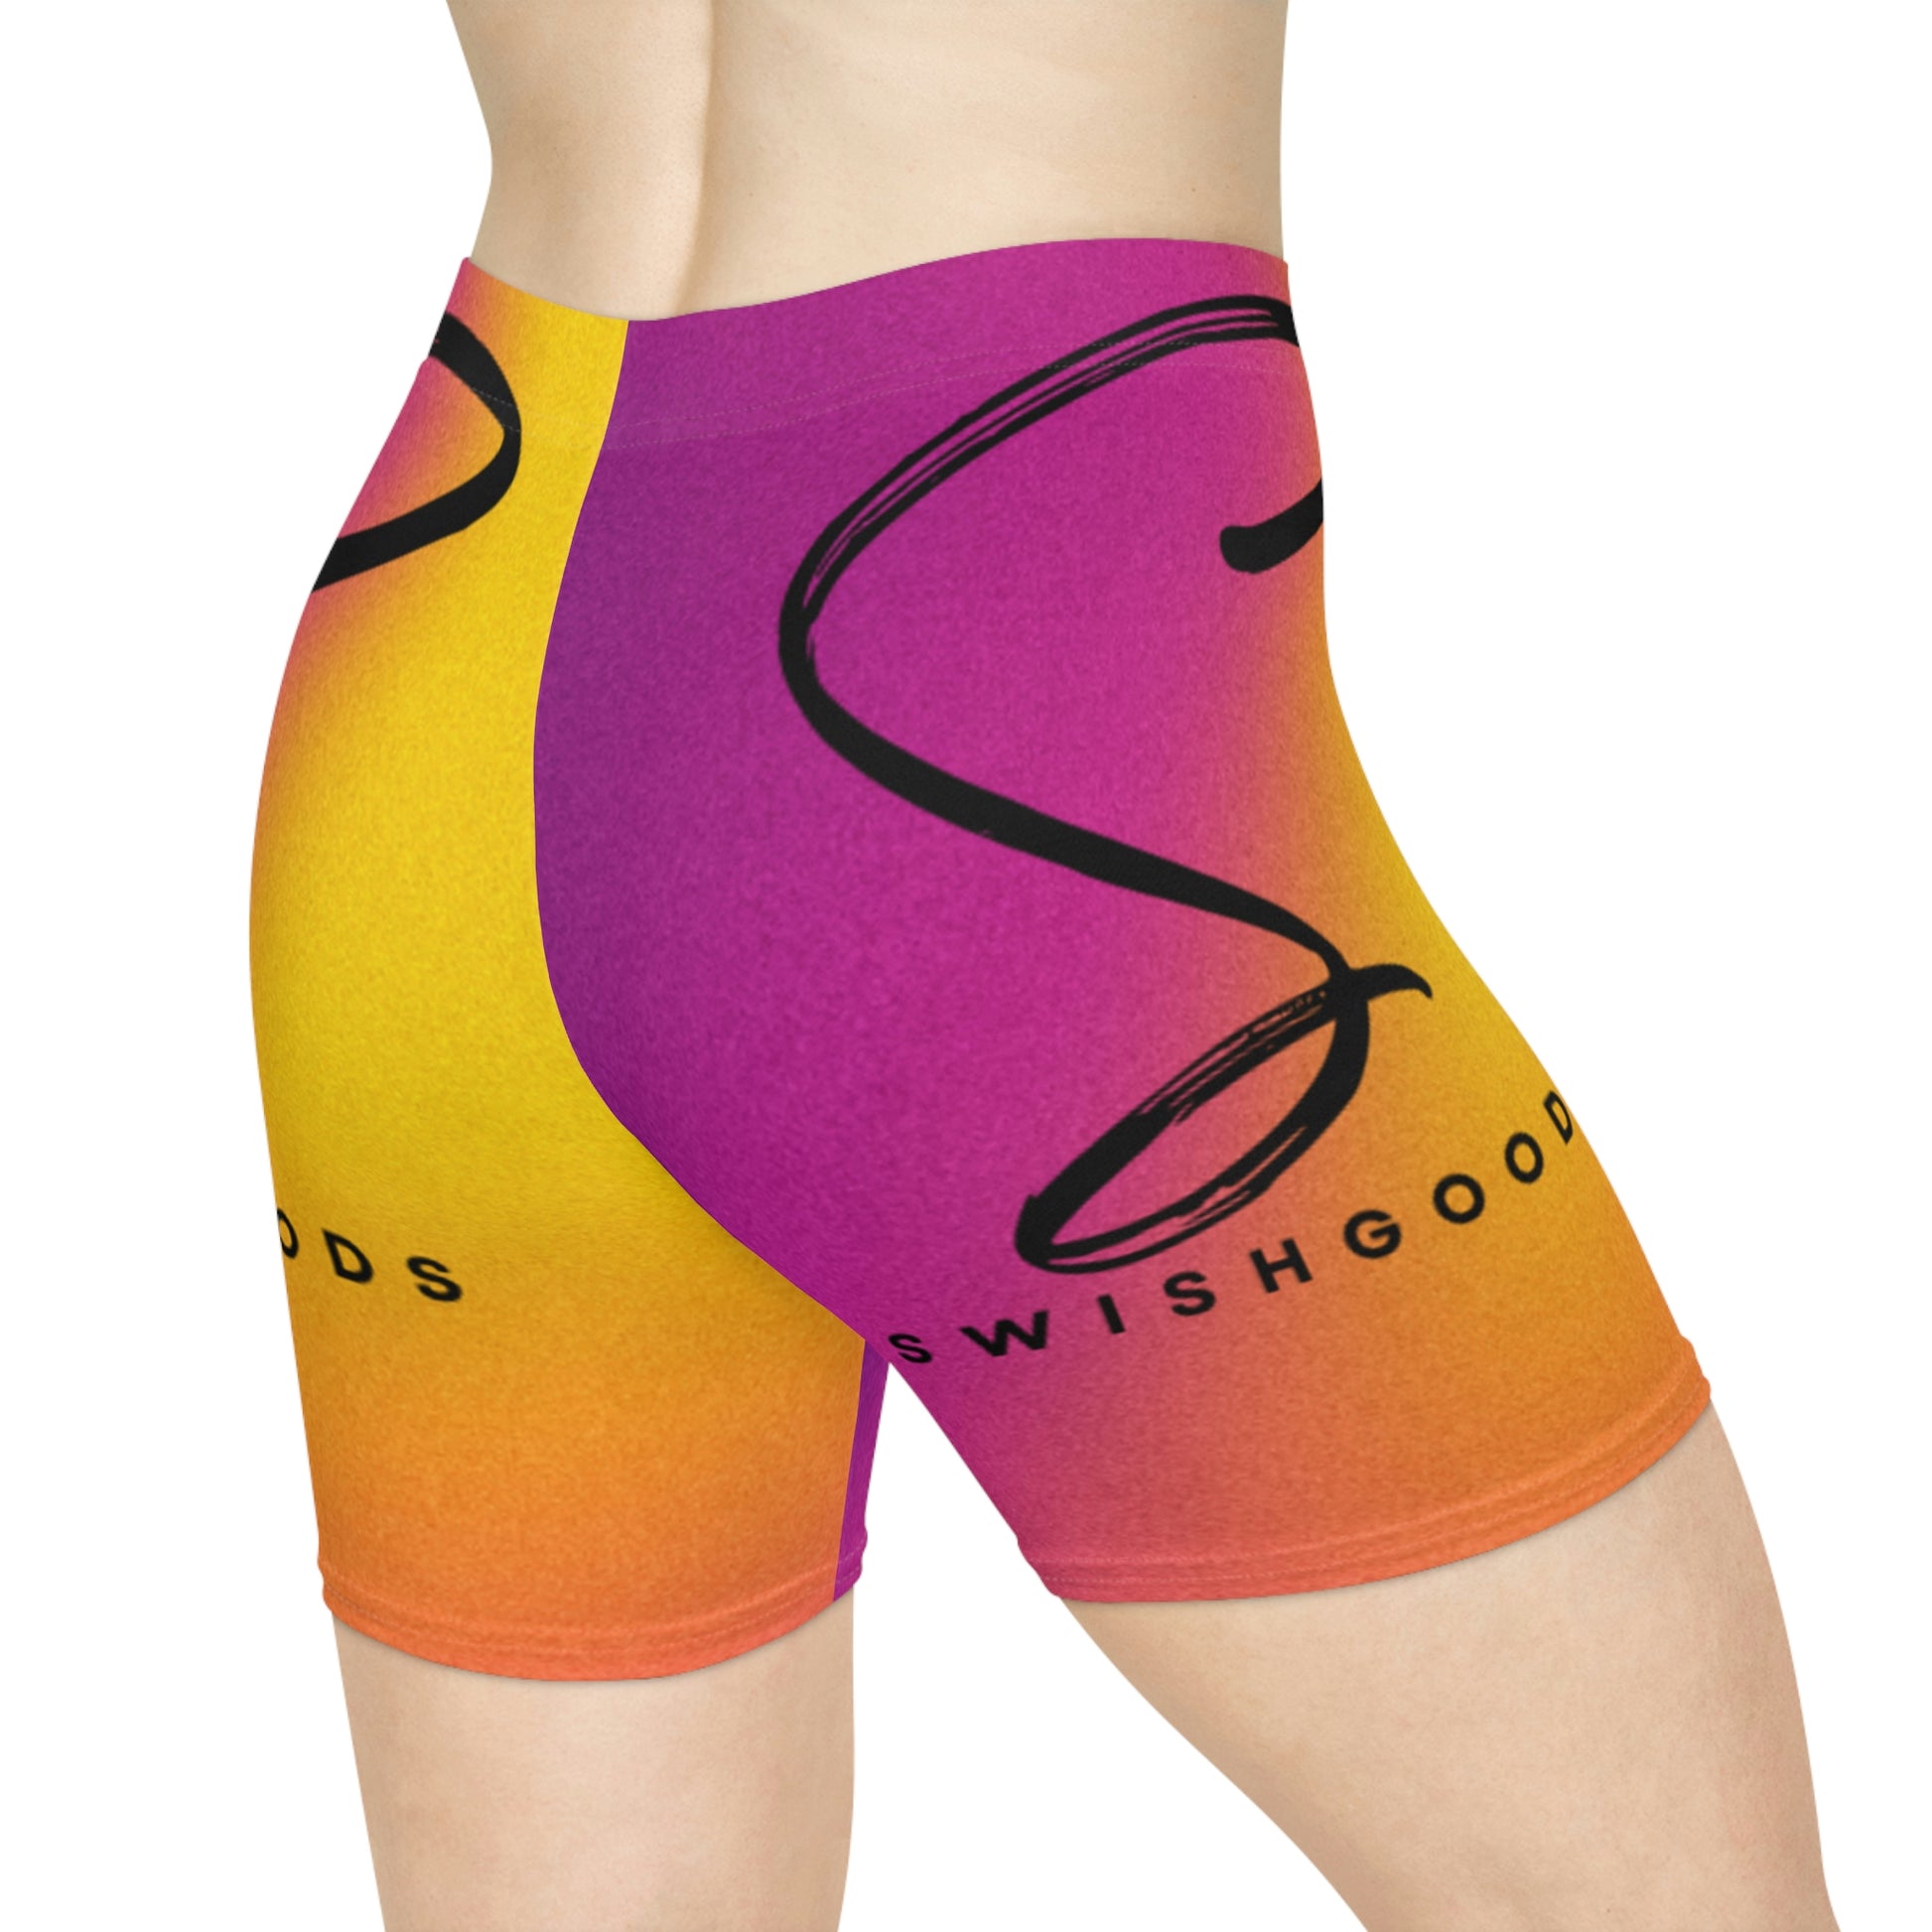 Women's Biker Shorts - Swishgoods